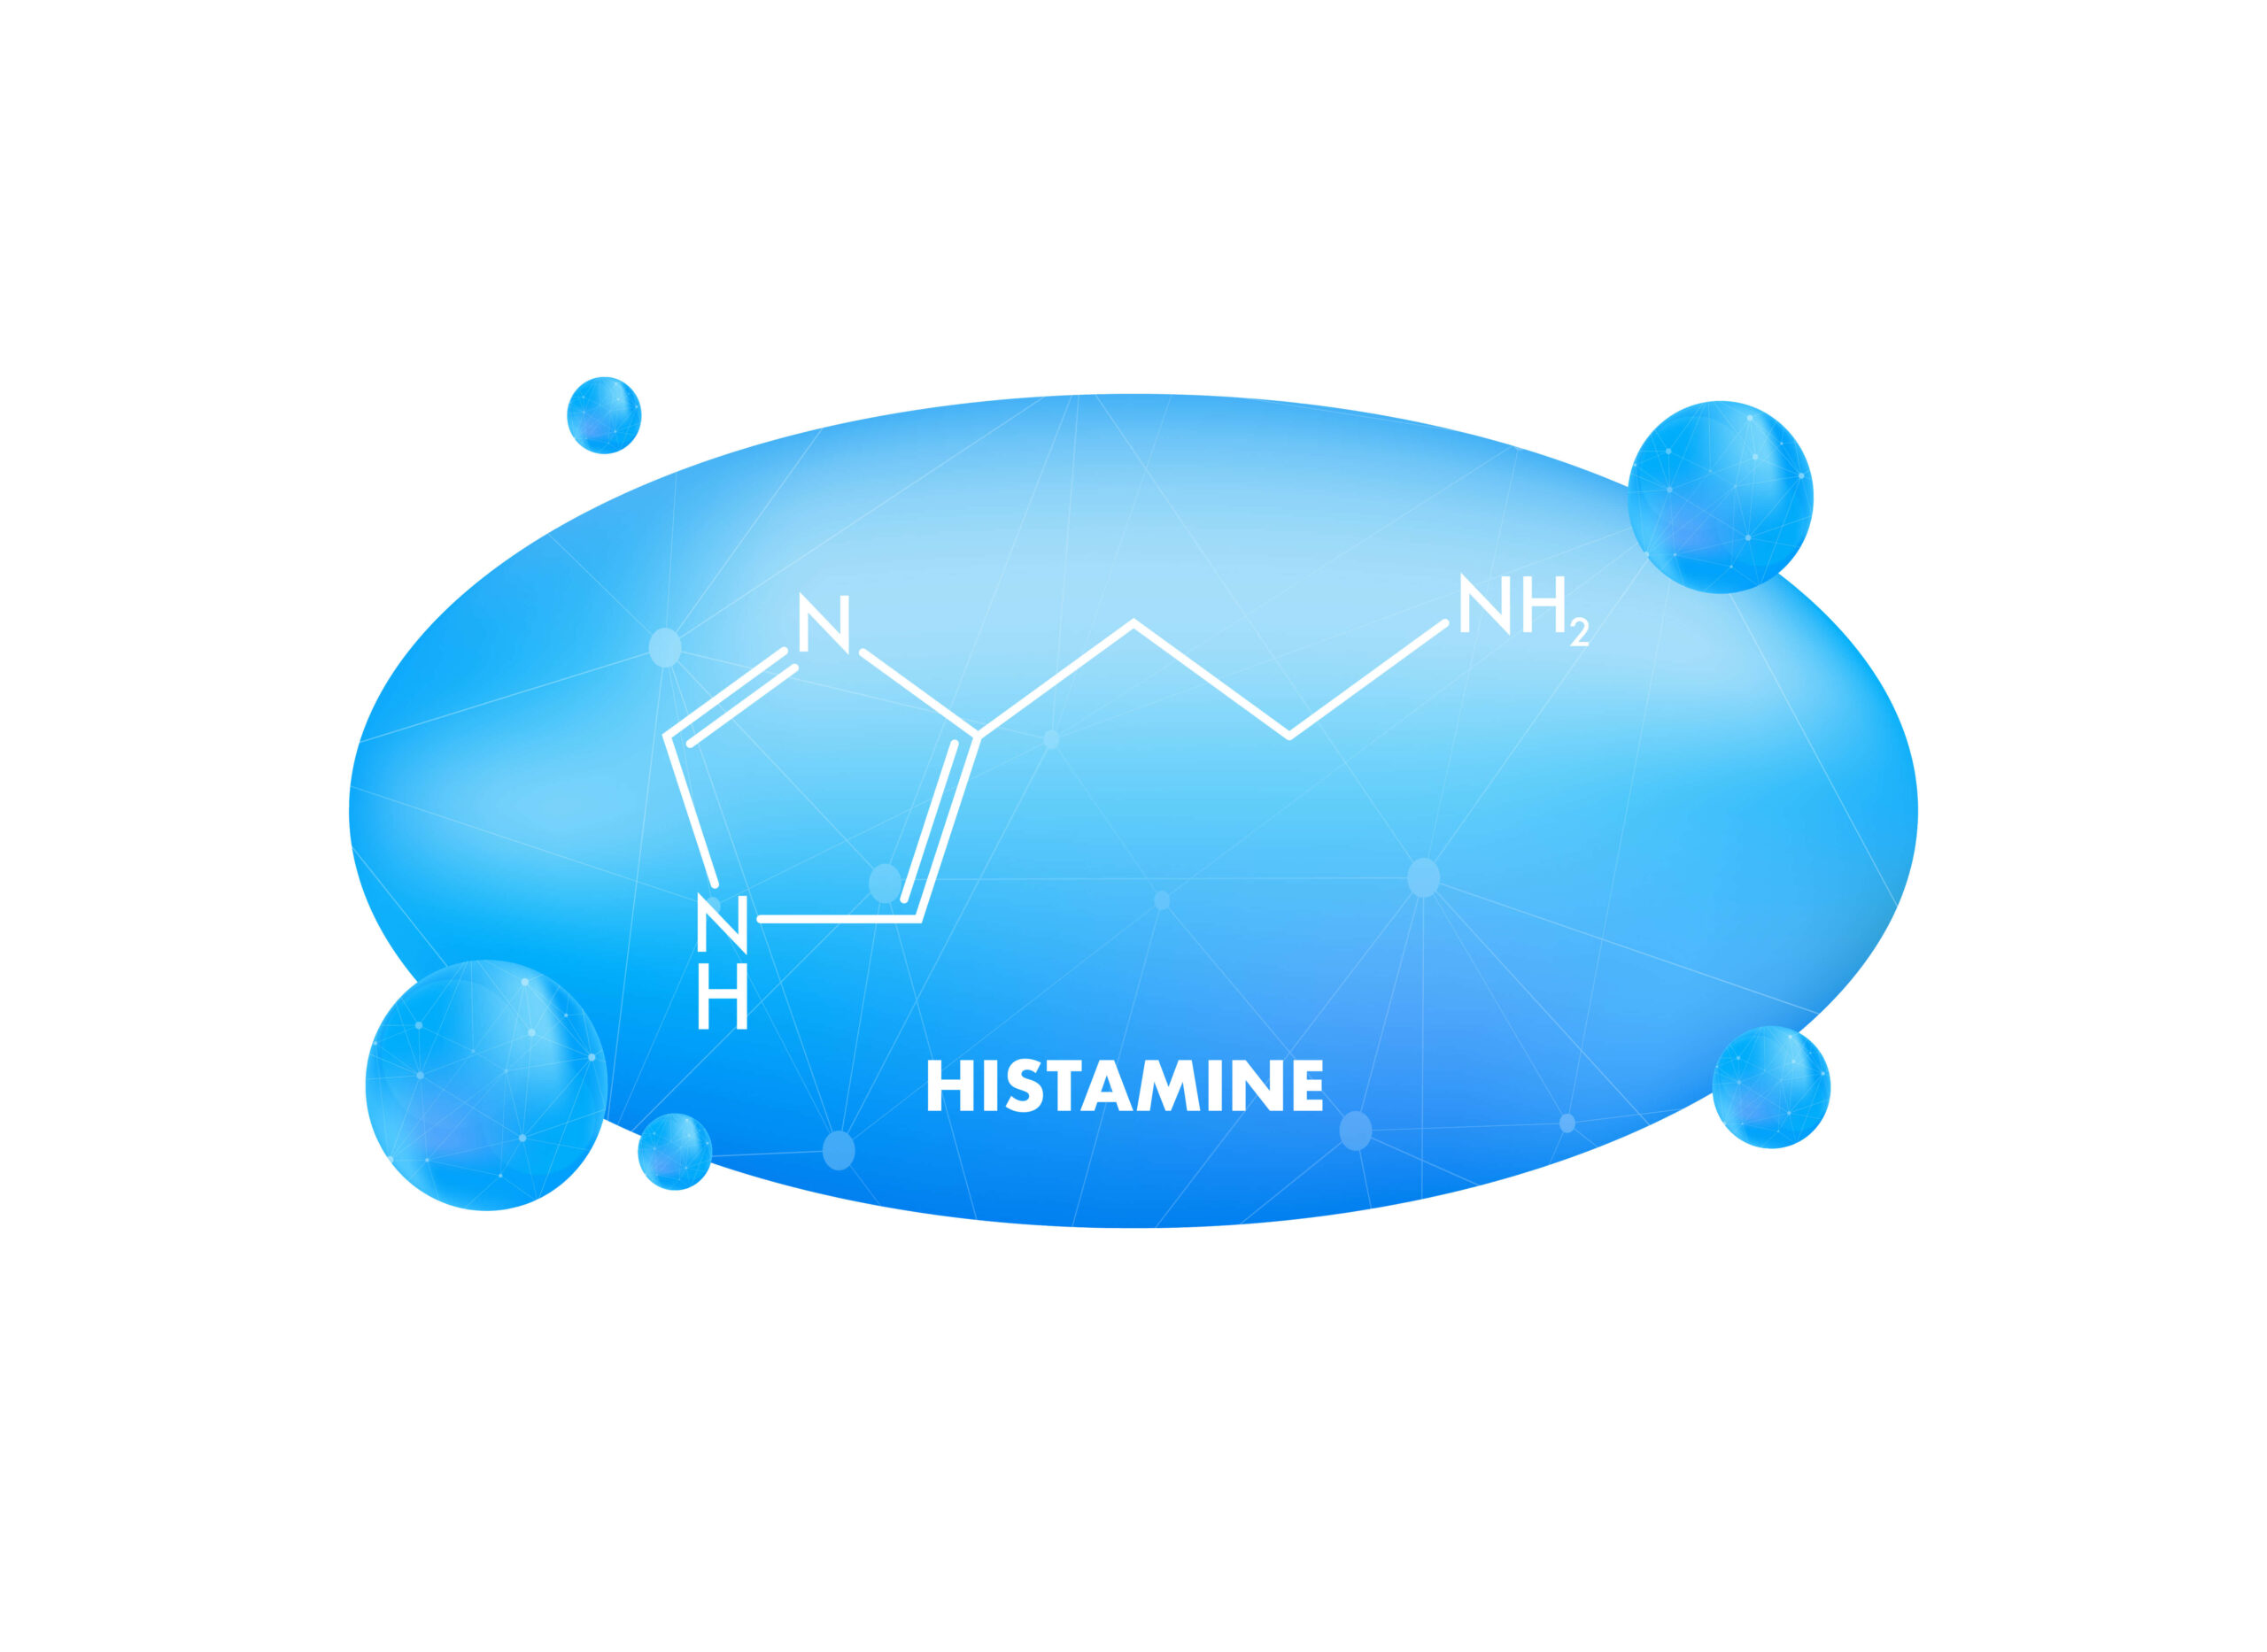 Descubre la Histaminosis: Cómo Identificar, Tratar y Recuperar tu Bienestar